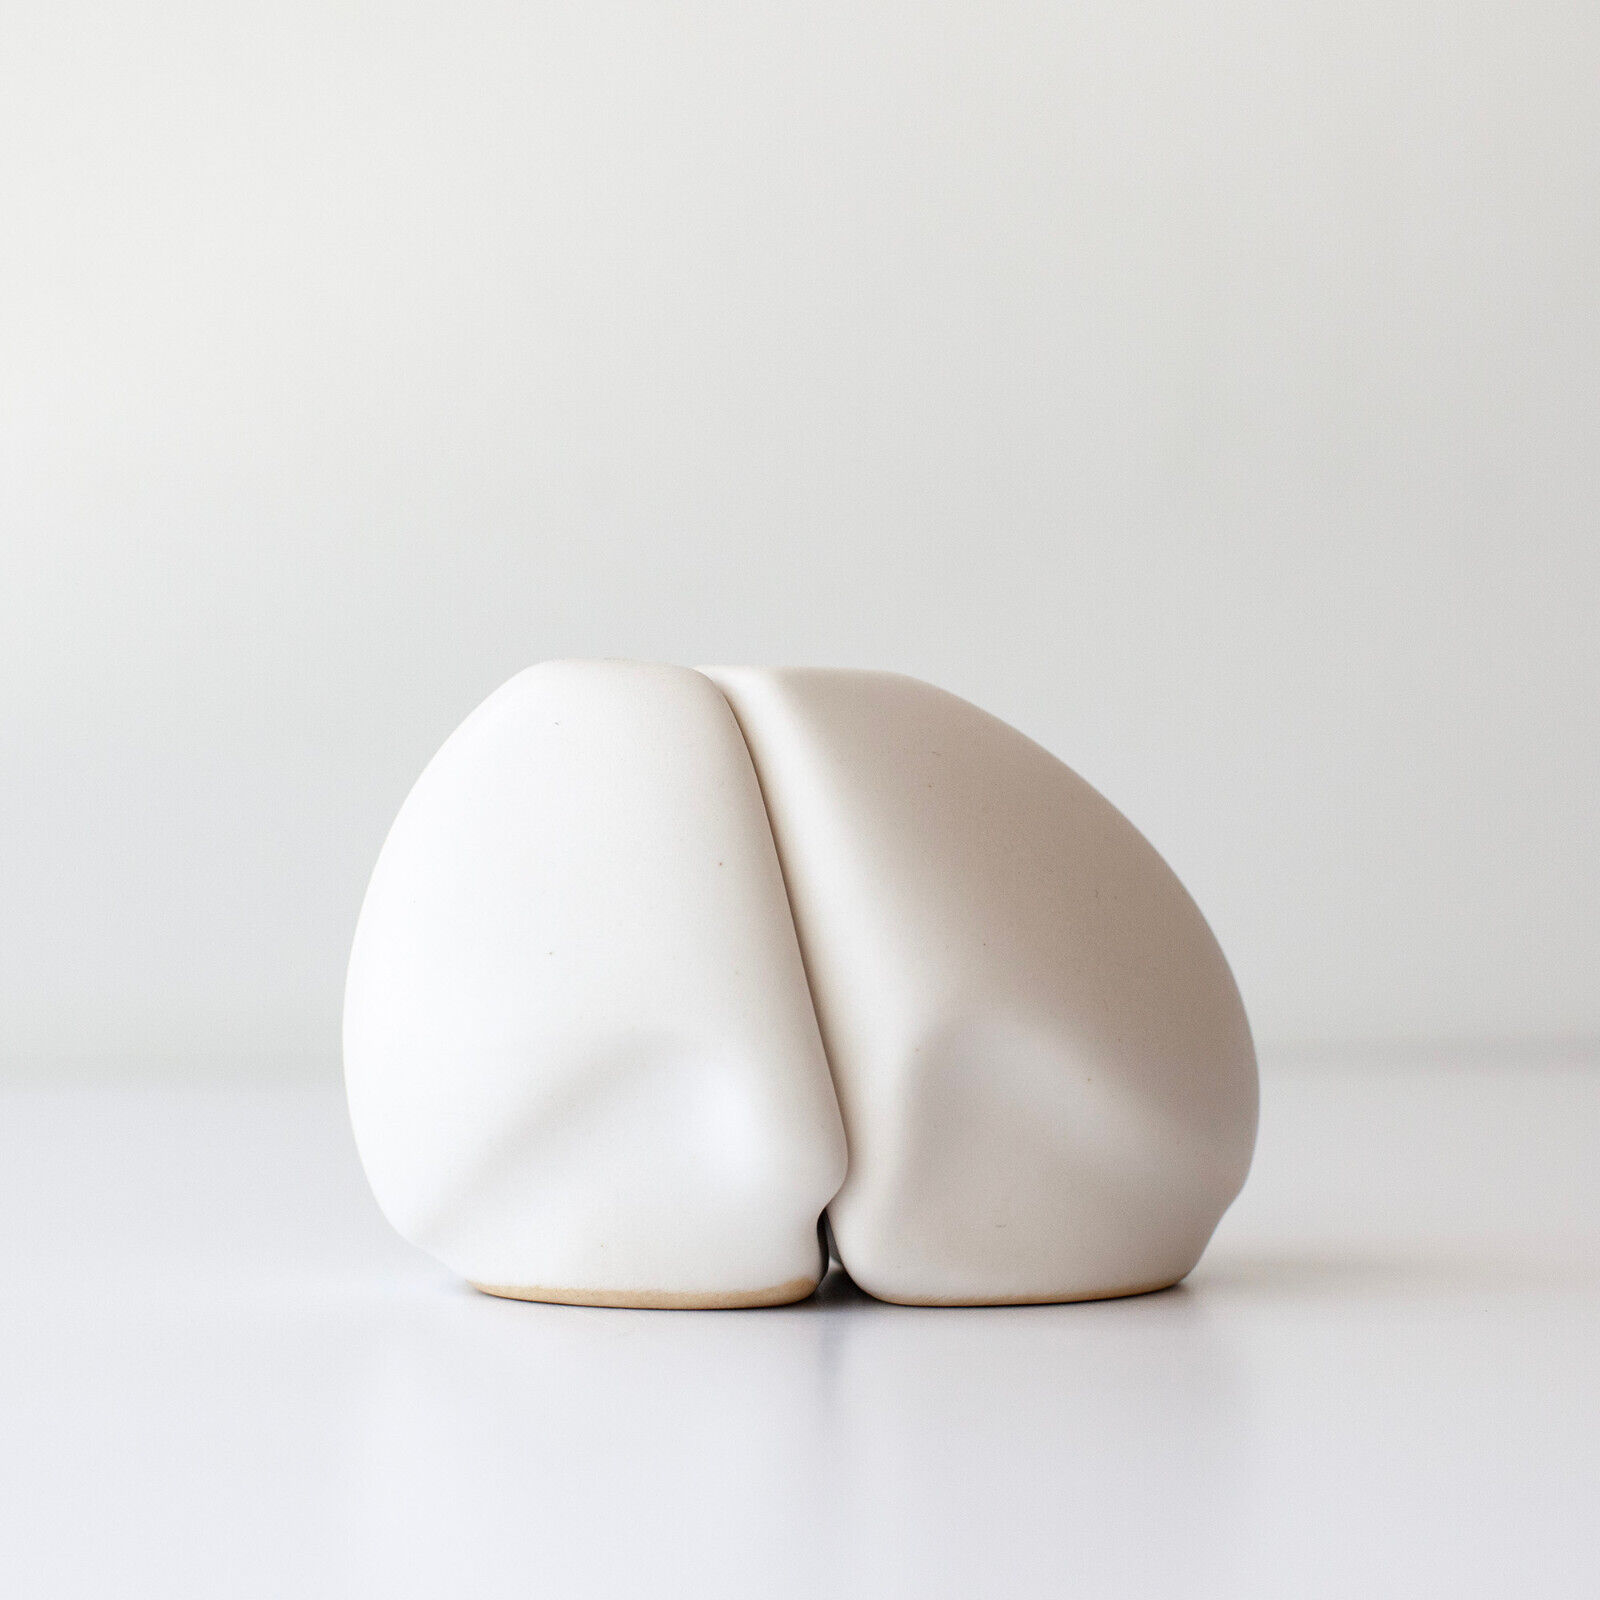 Peter Saenger White Porcelain Salt & Pepper Shaker Set - Contemporary Modern